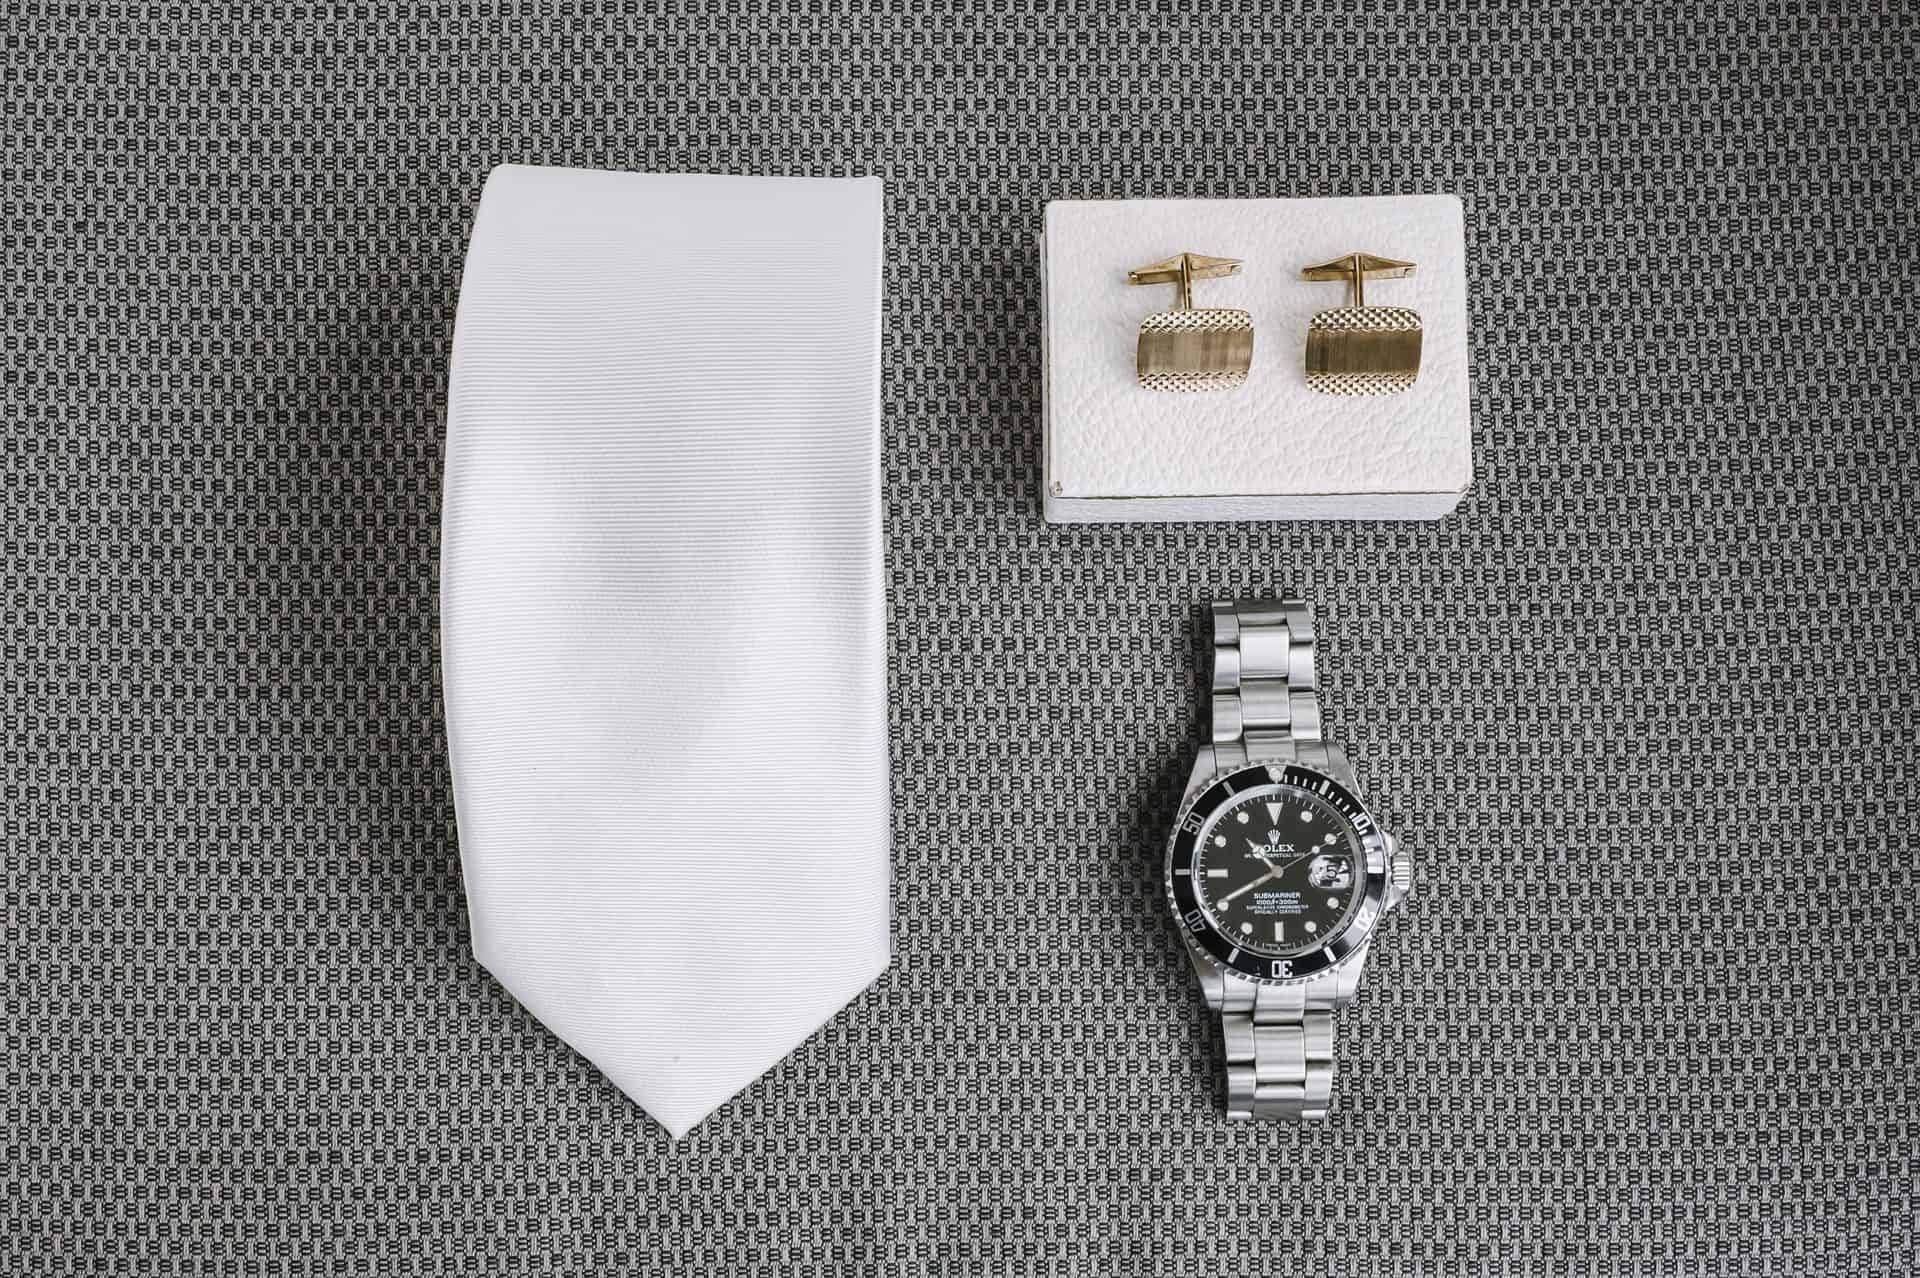 Auf einem Tisch liegen eine Uhr, eine Krawatte und Manschettenknöpfe.